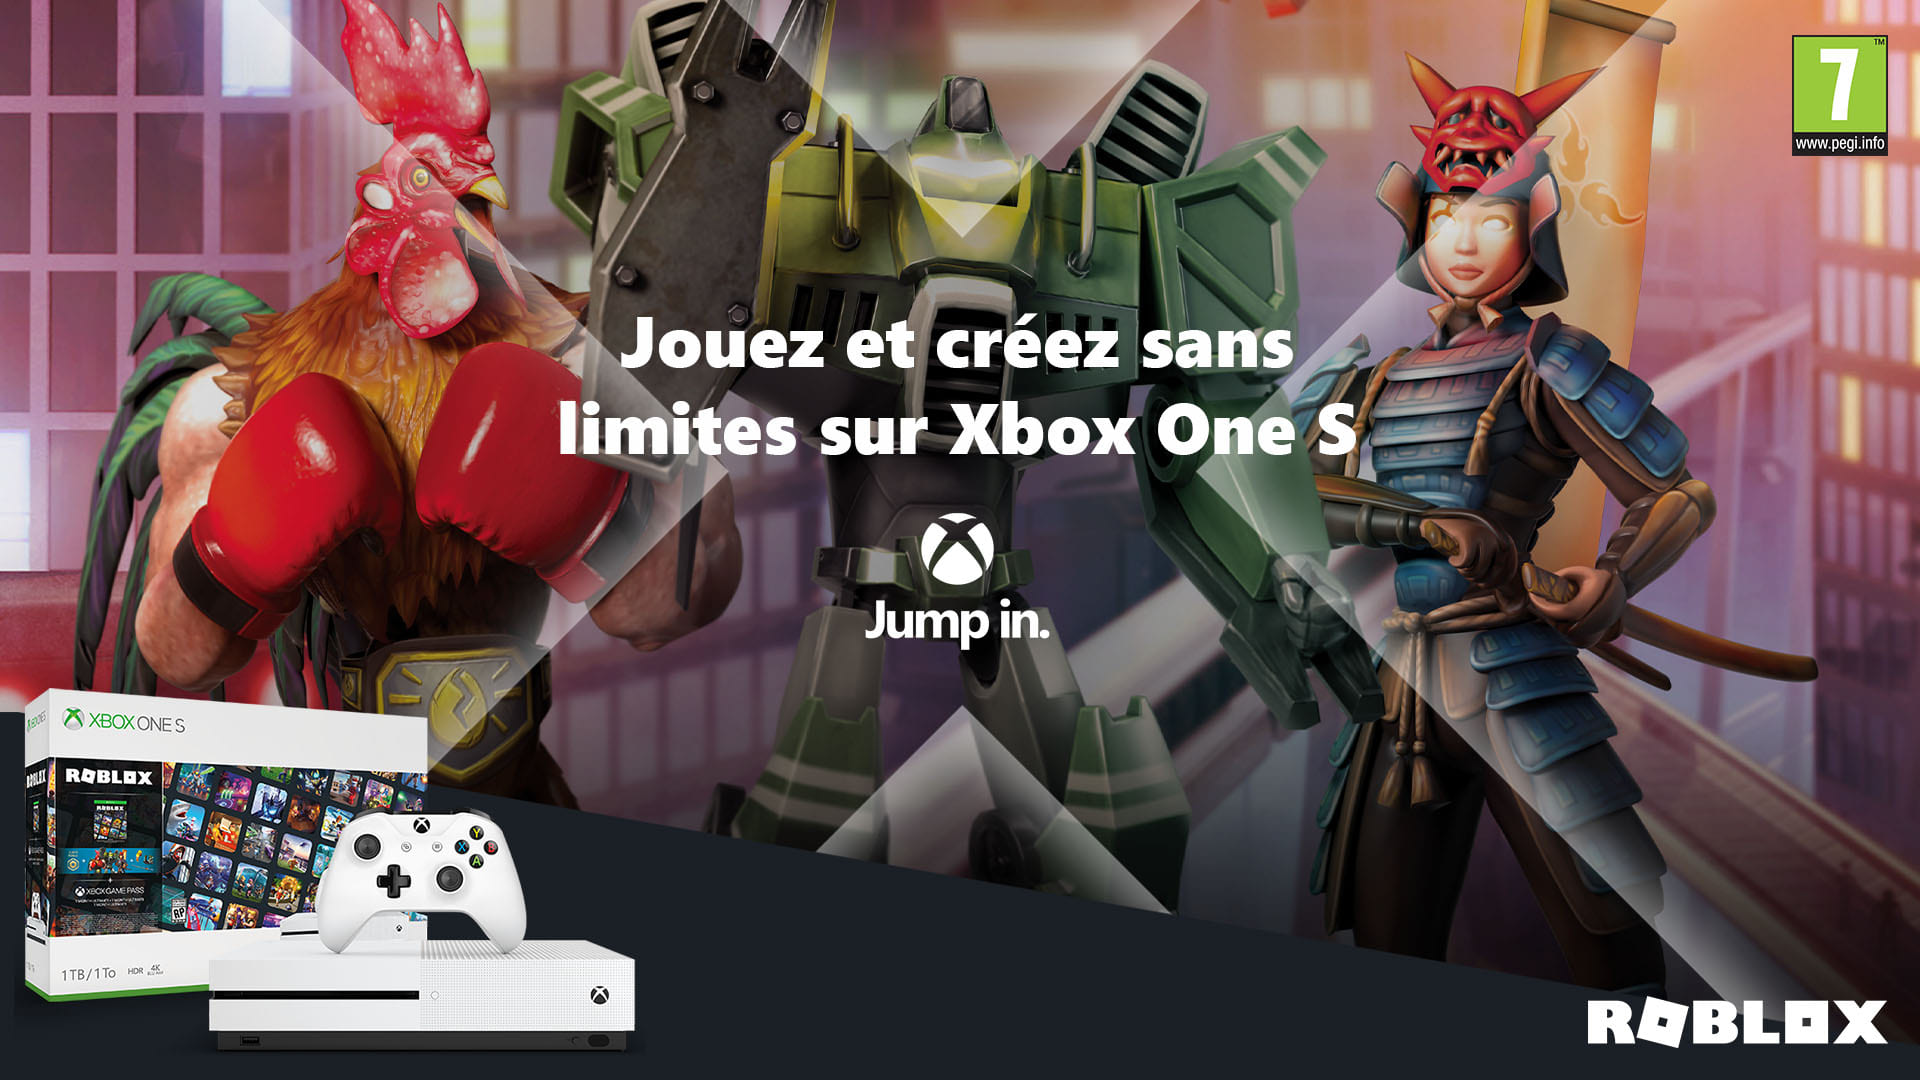 Jouez Et Creez Sans Limites Avec Le Pack Xbox One S Roblox